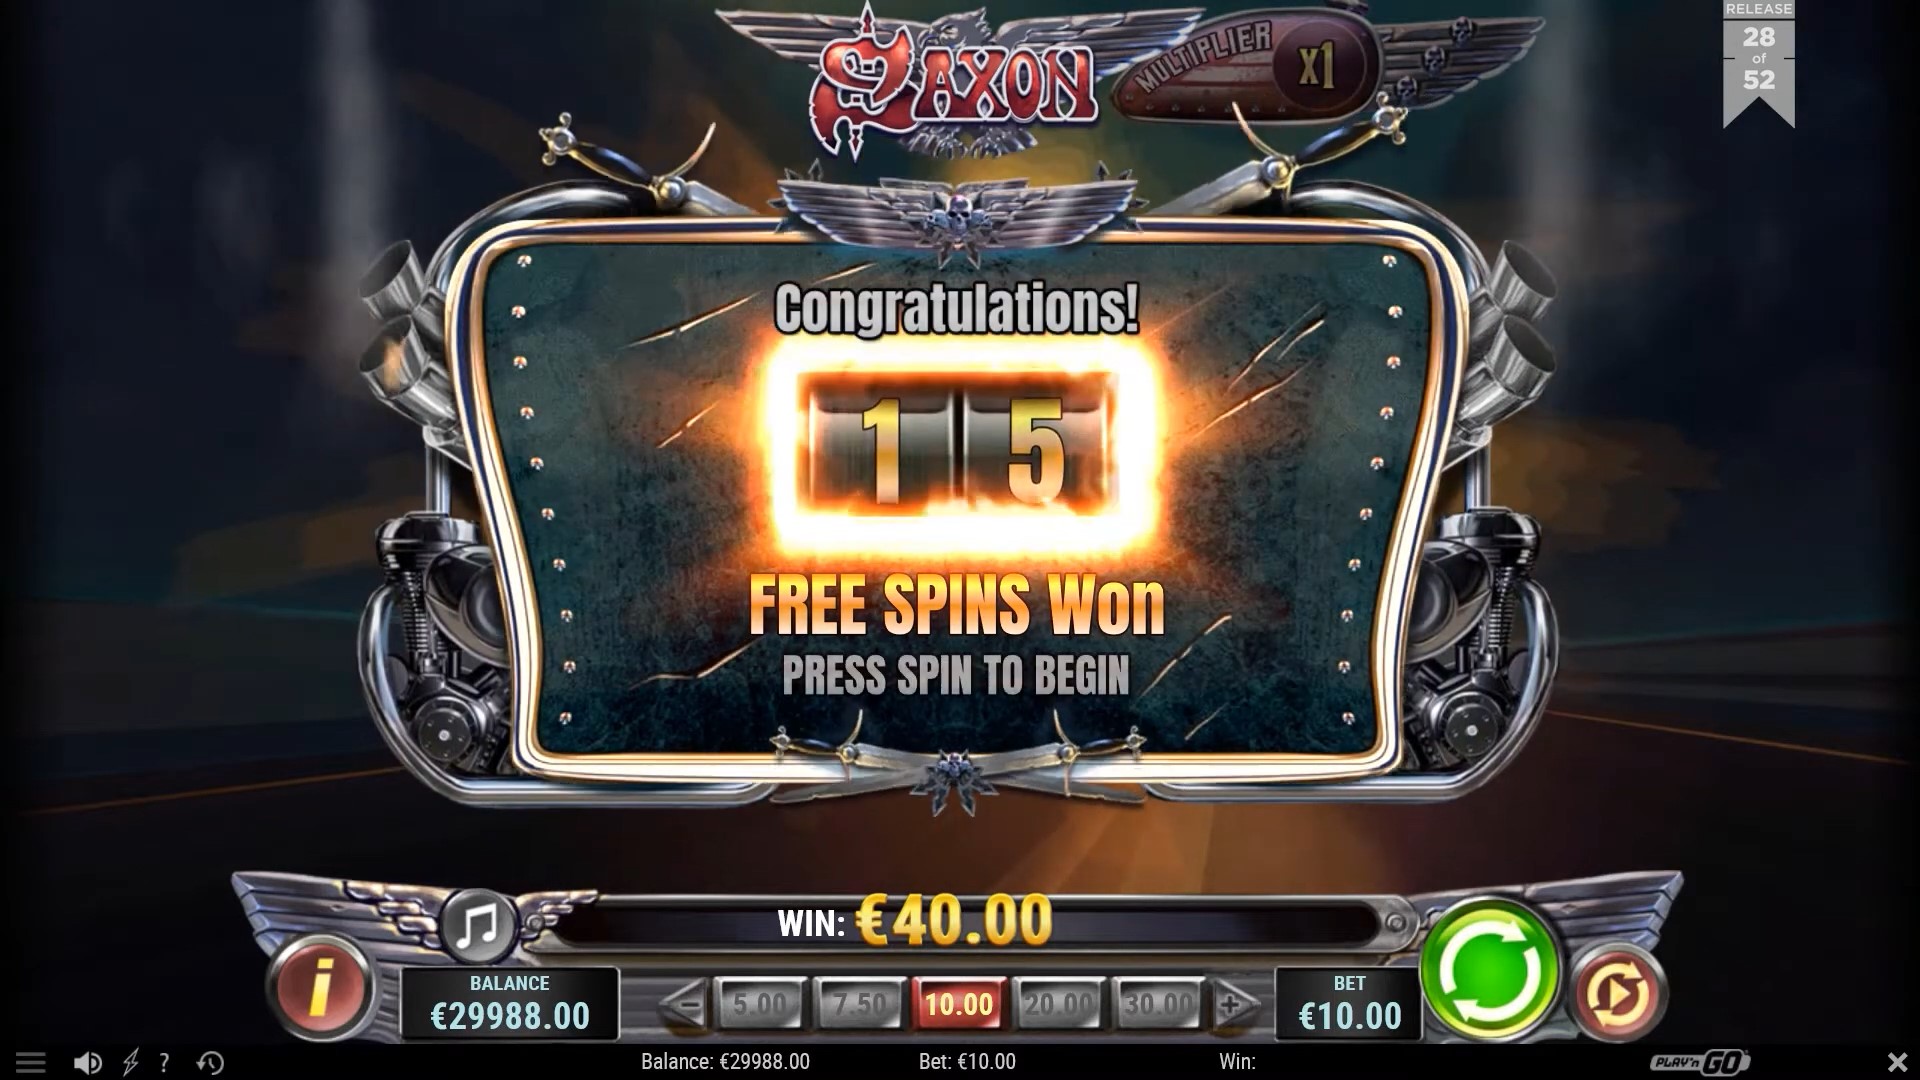 Saxon free spin Playn GO